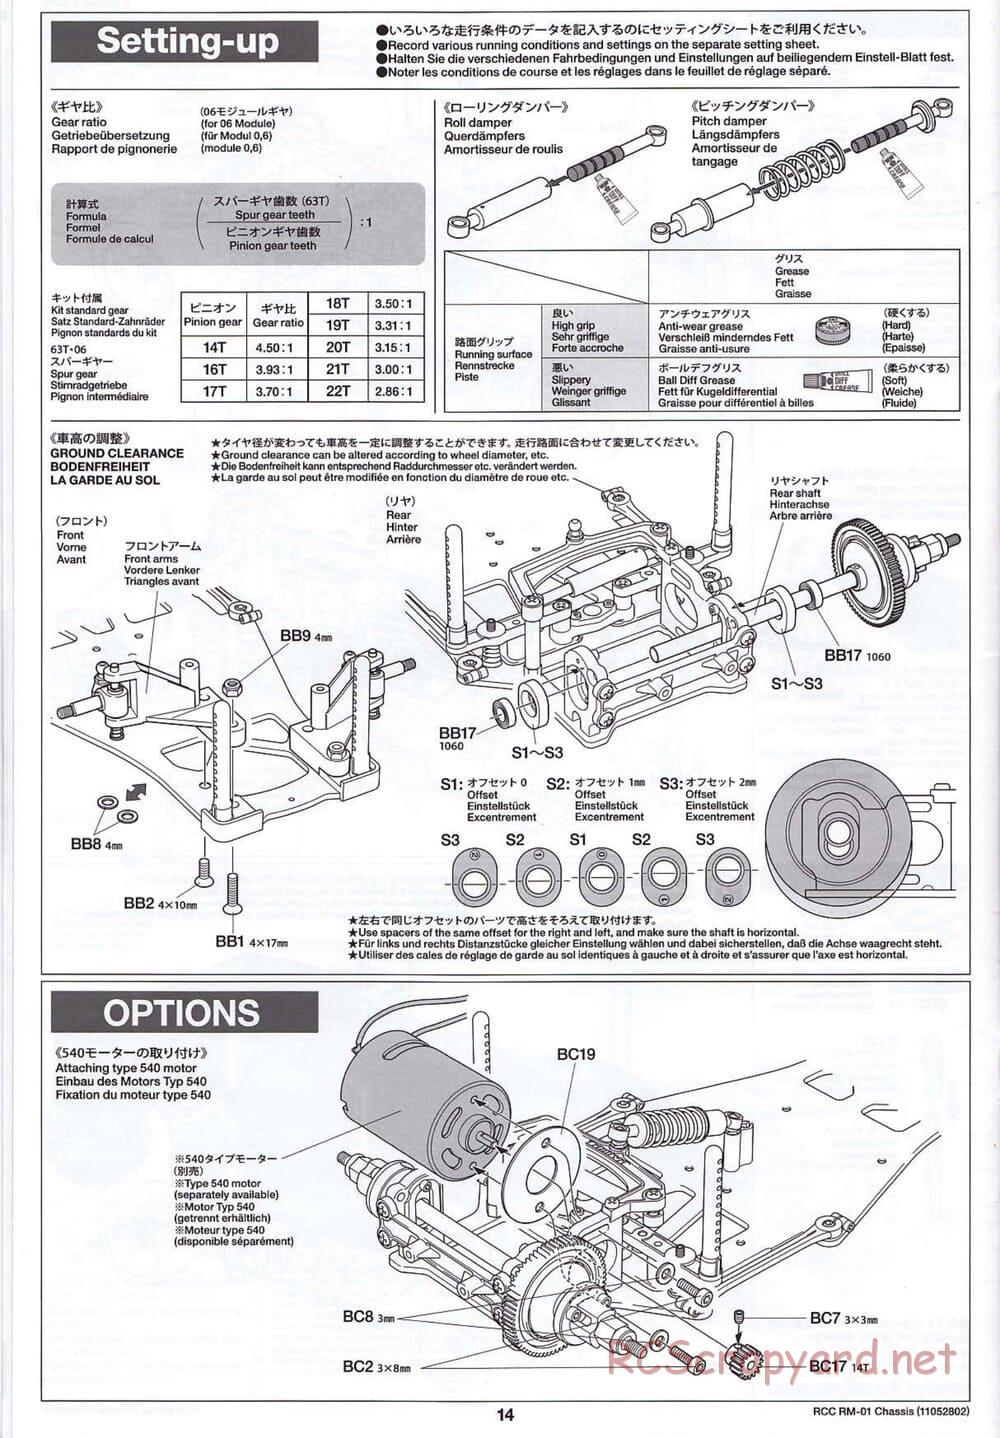 Tamiya - TA04-SS Chassis - Manual - Page 14